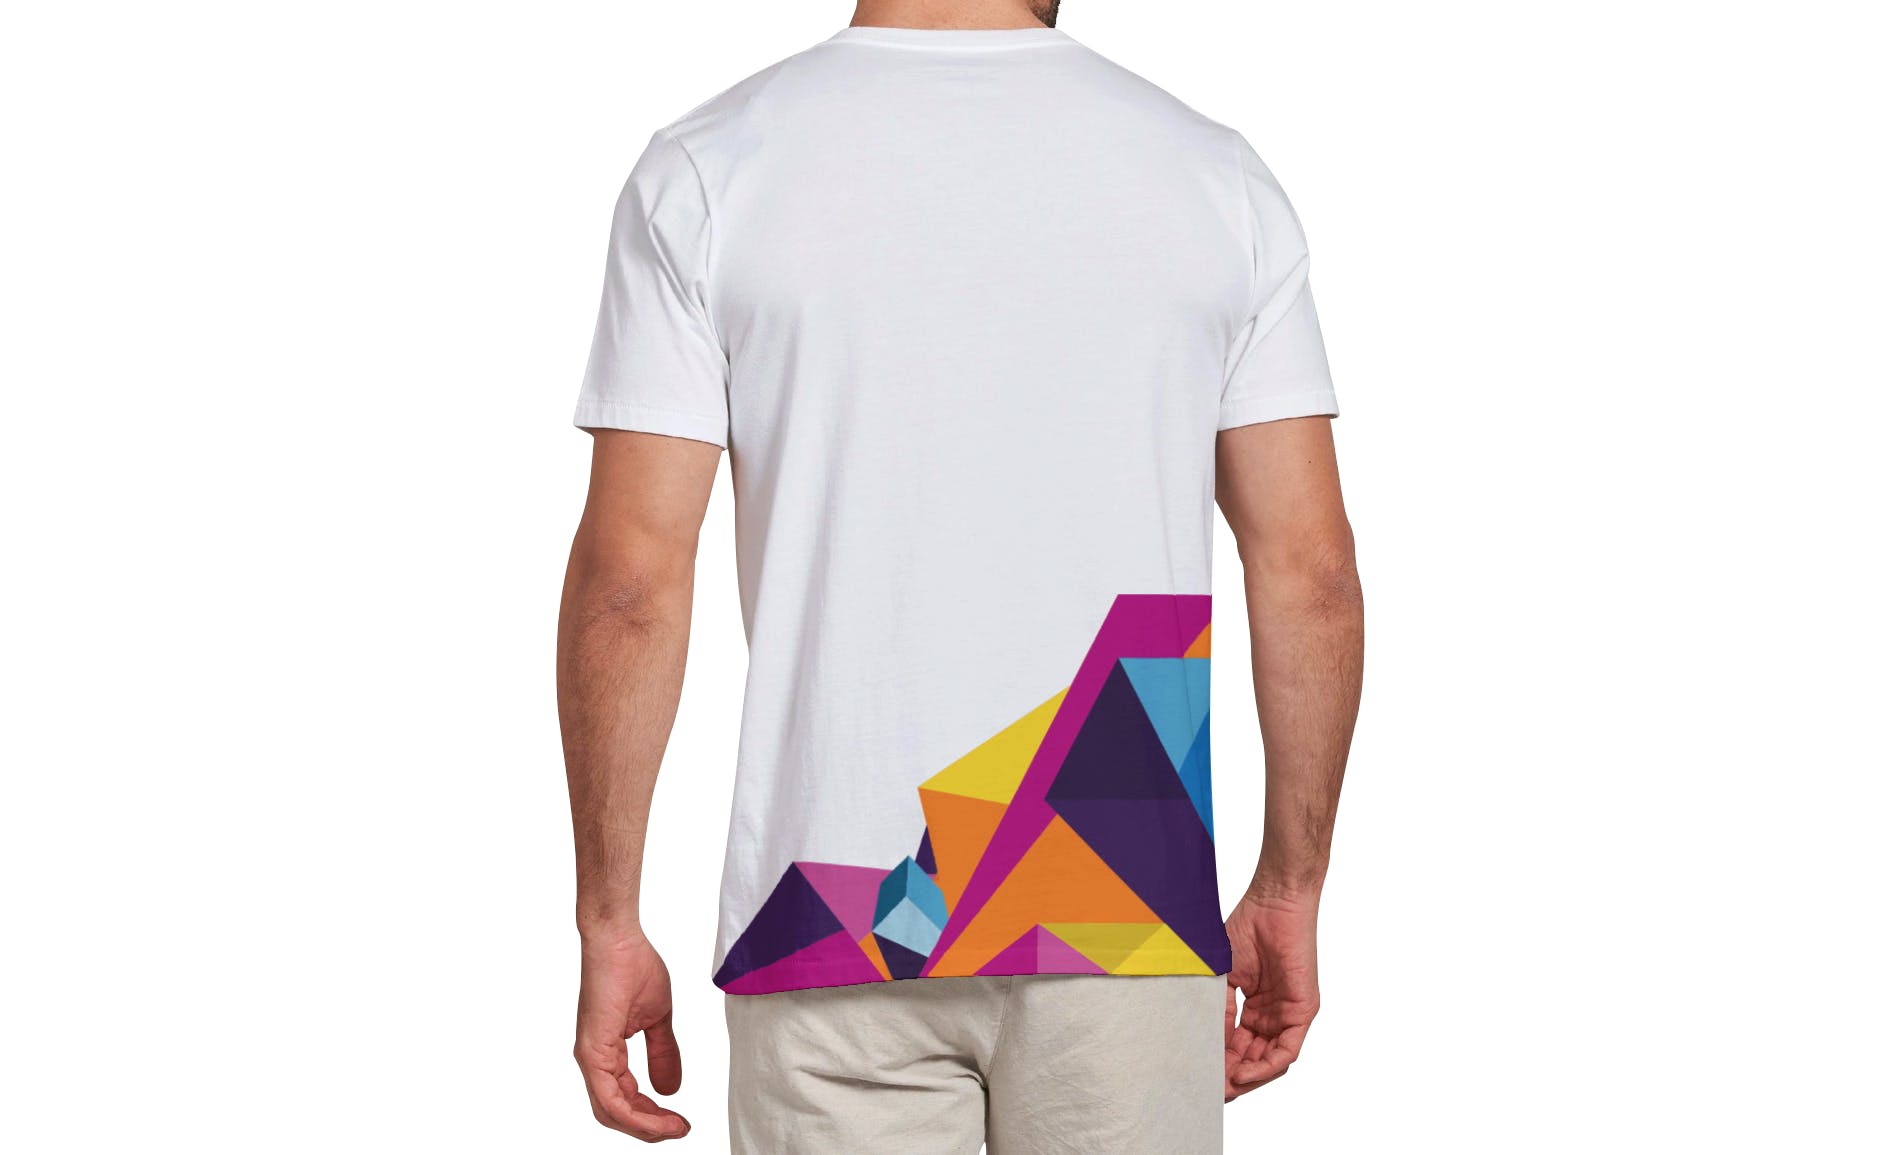 男士T恤印花设计效果图样机16设计网精选v03 T-shirt Mockup Vol 03插图(11)